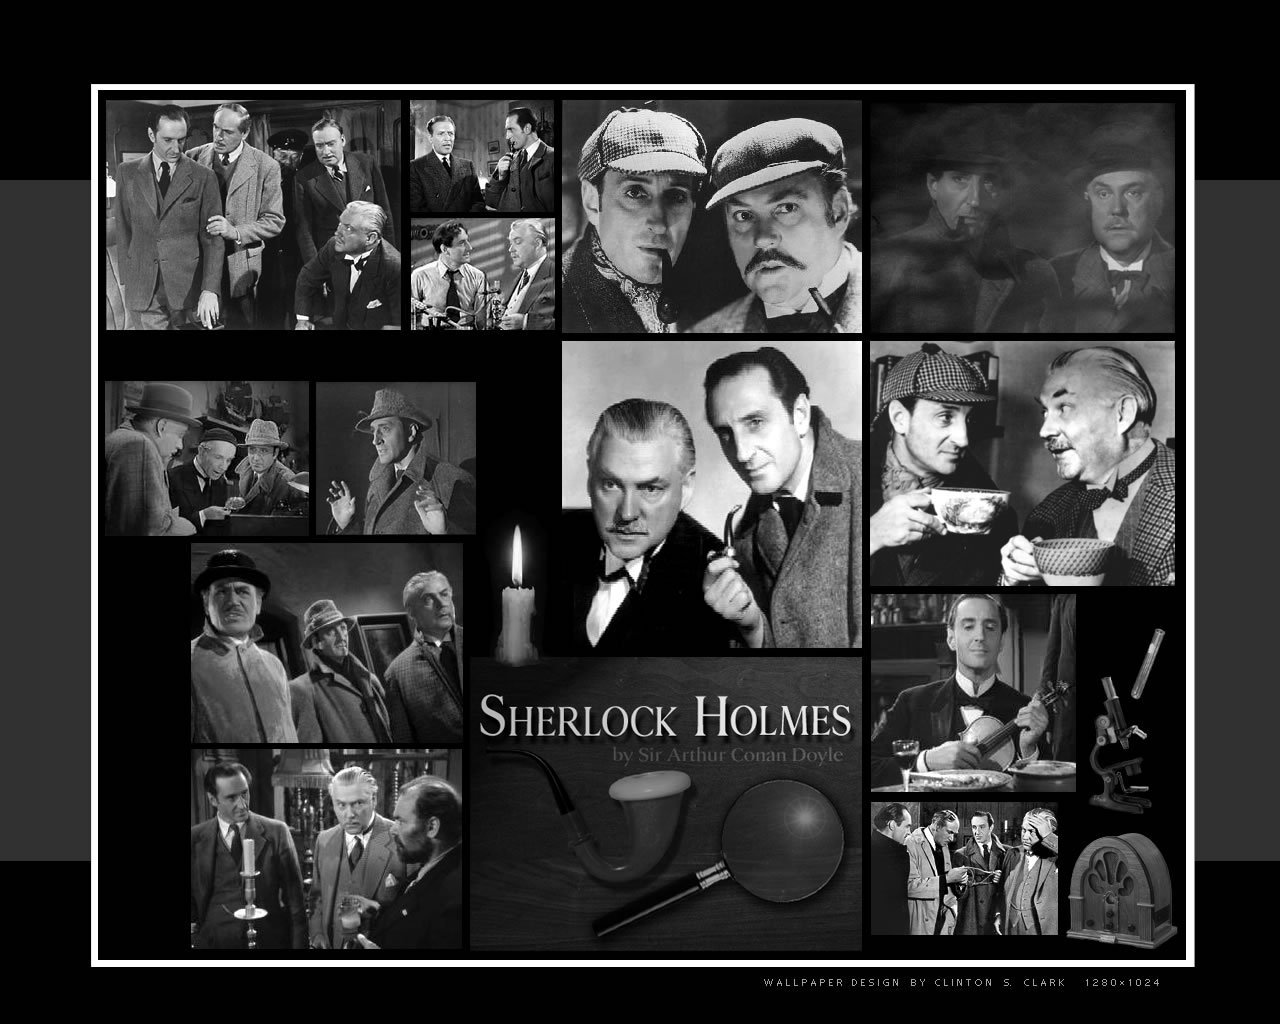 Sherlock Holmes - Sherlock Holmes Wallpaper (7144552) - Fanpop